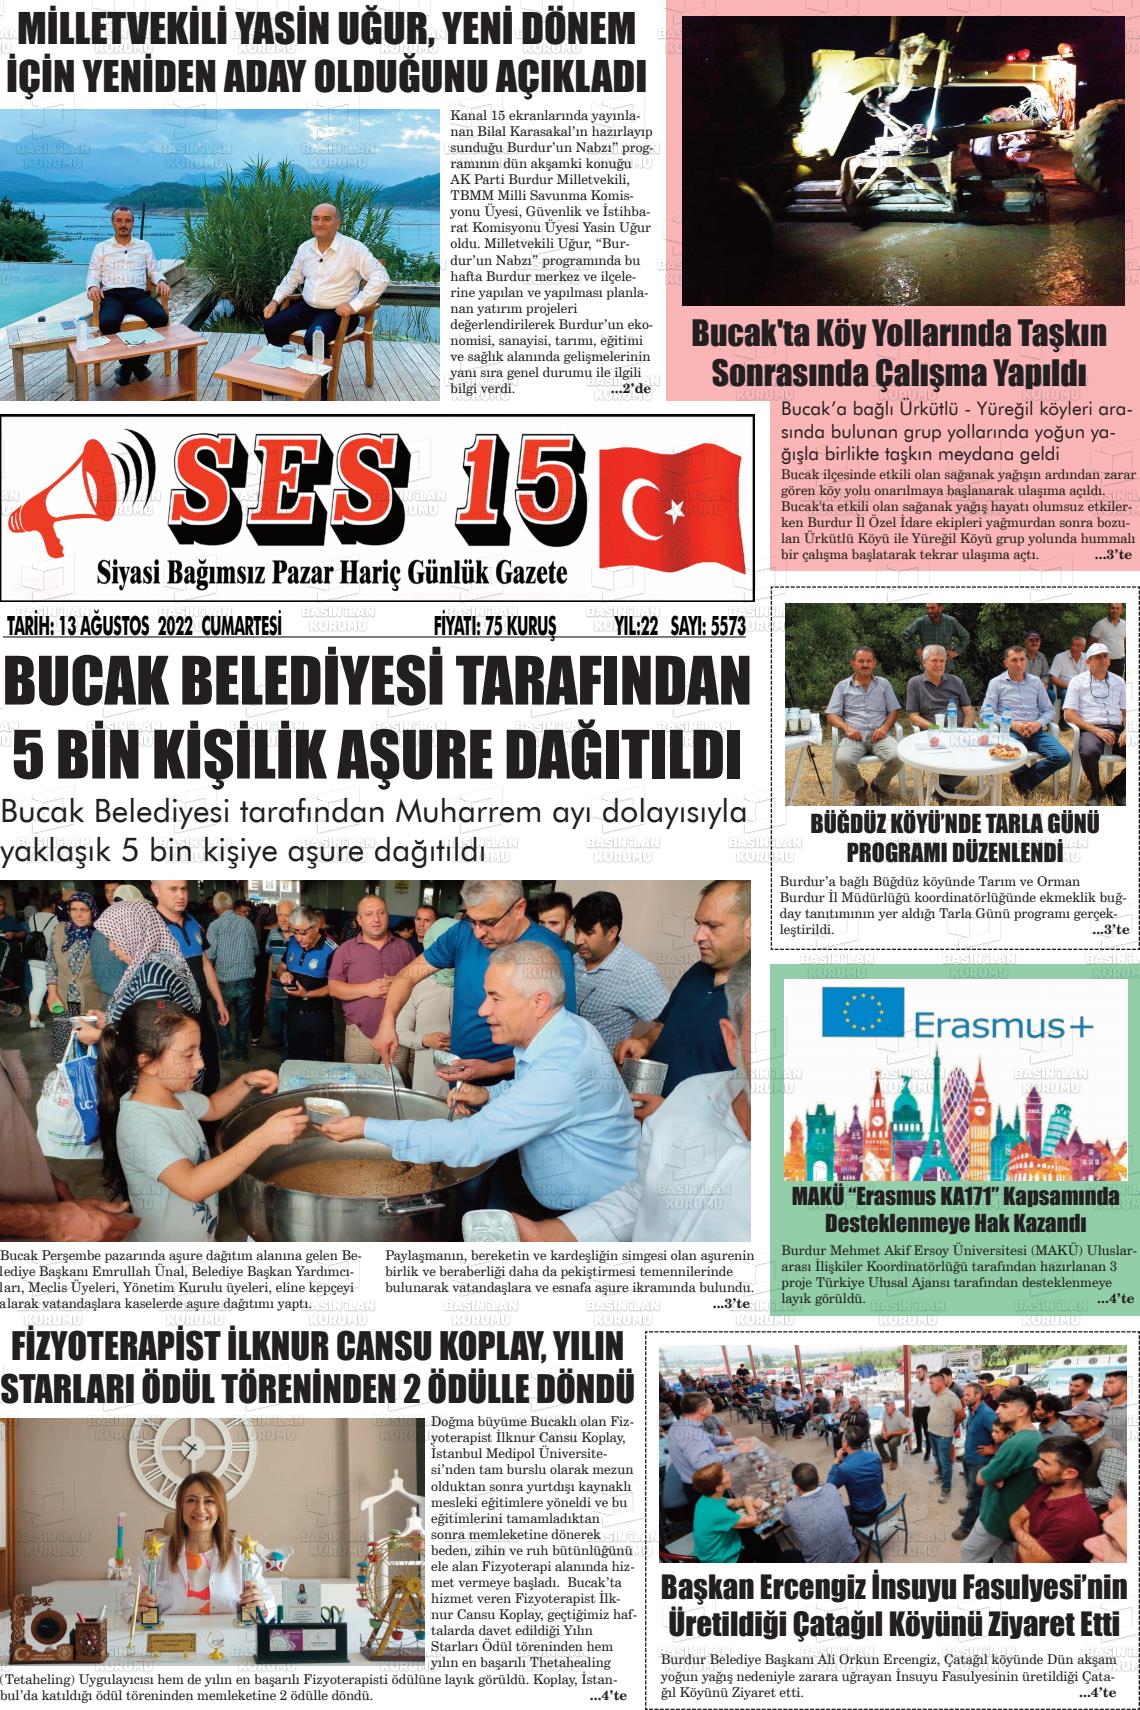 13 Ağustos 2022 Ses 15 Gazete Manşeti